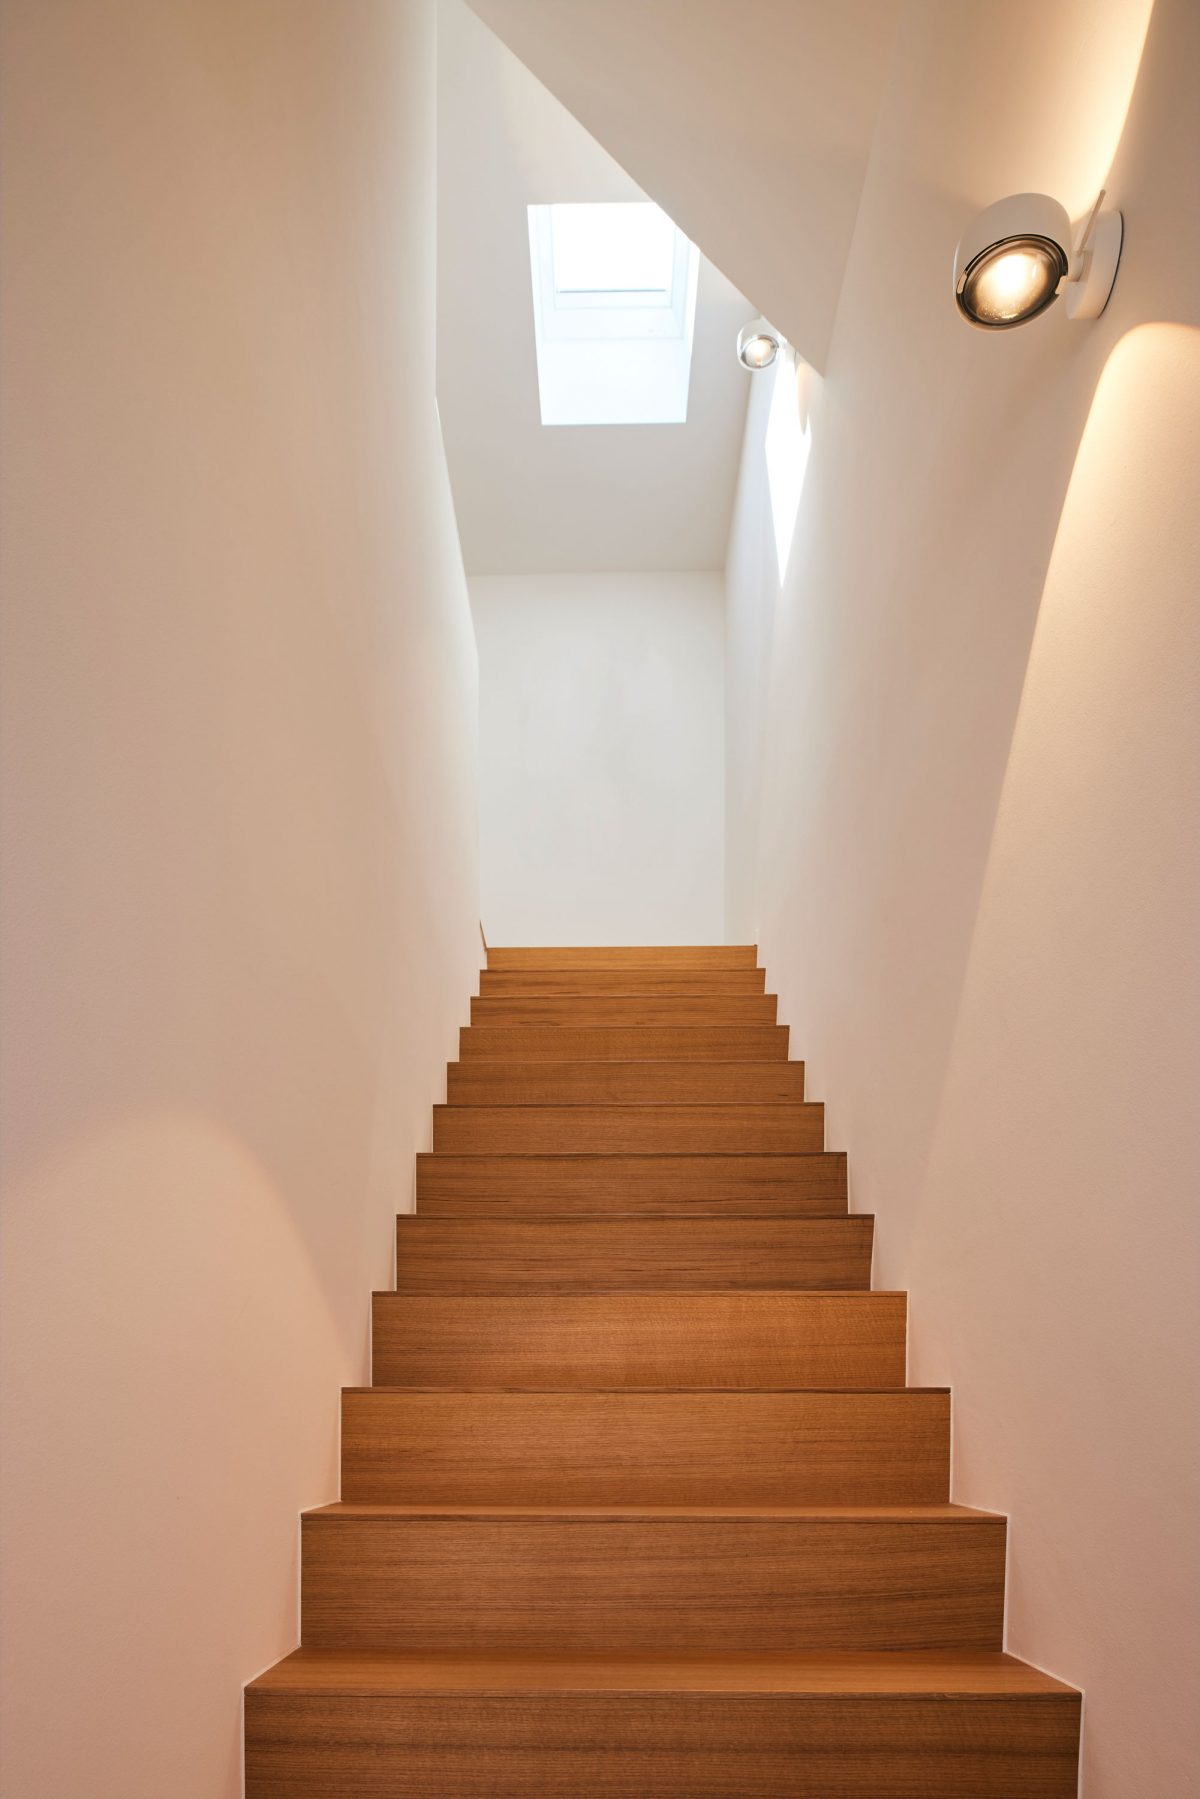 Einfamilienhaus SMN geplant von der Bermülller + Niemeyer Architekturwerkstatt in Nürnberg